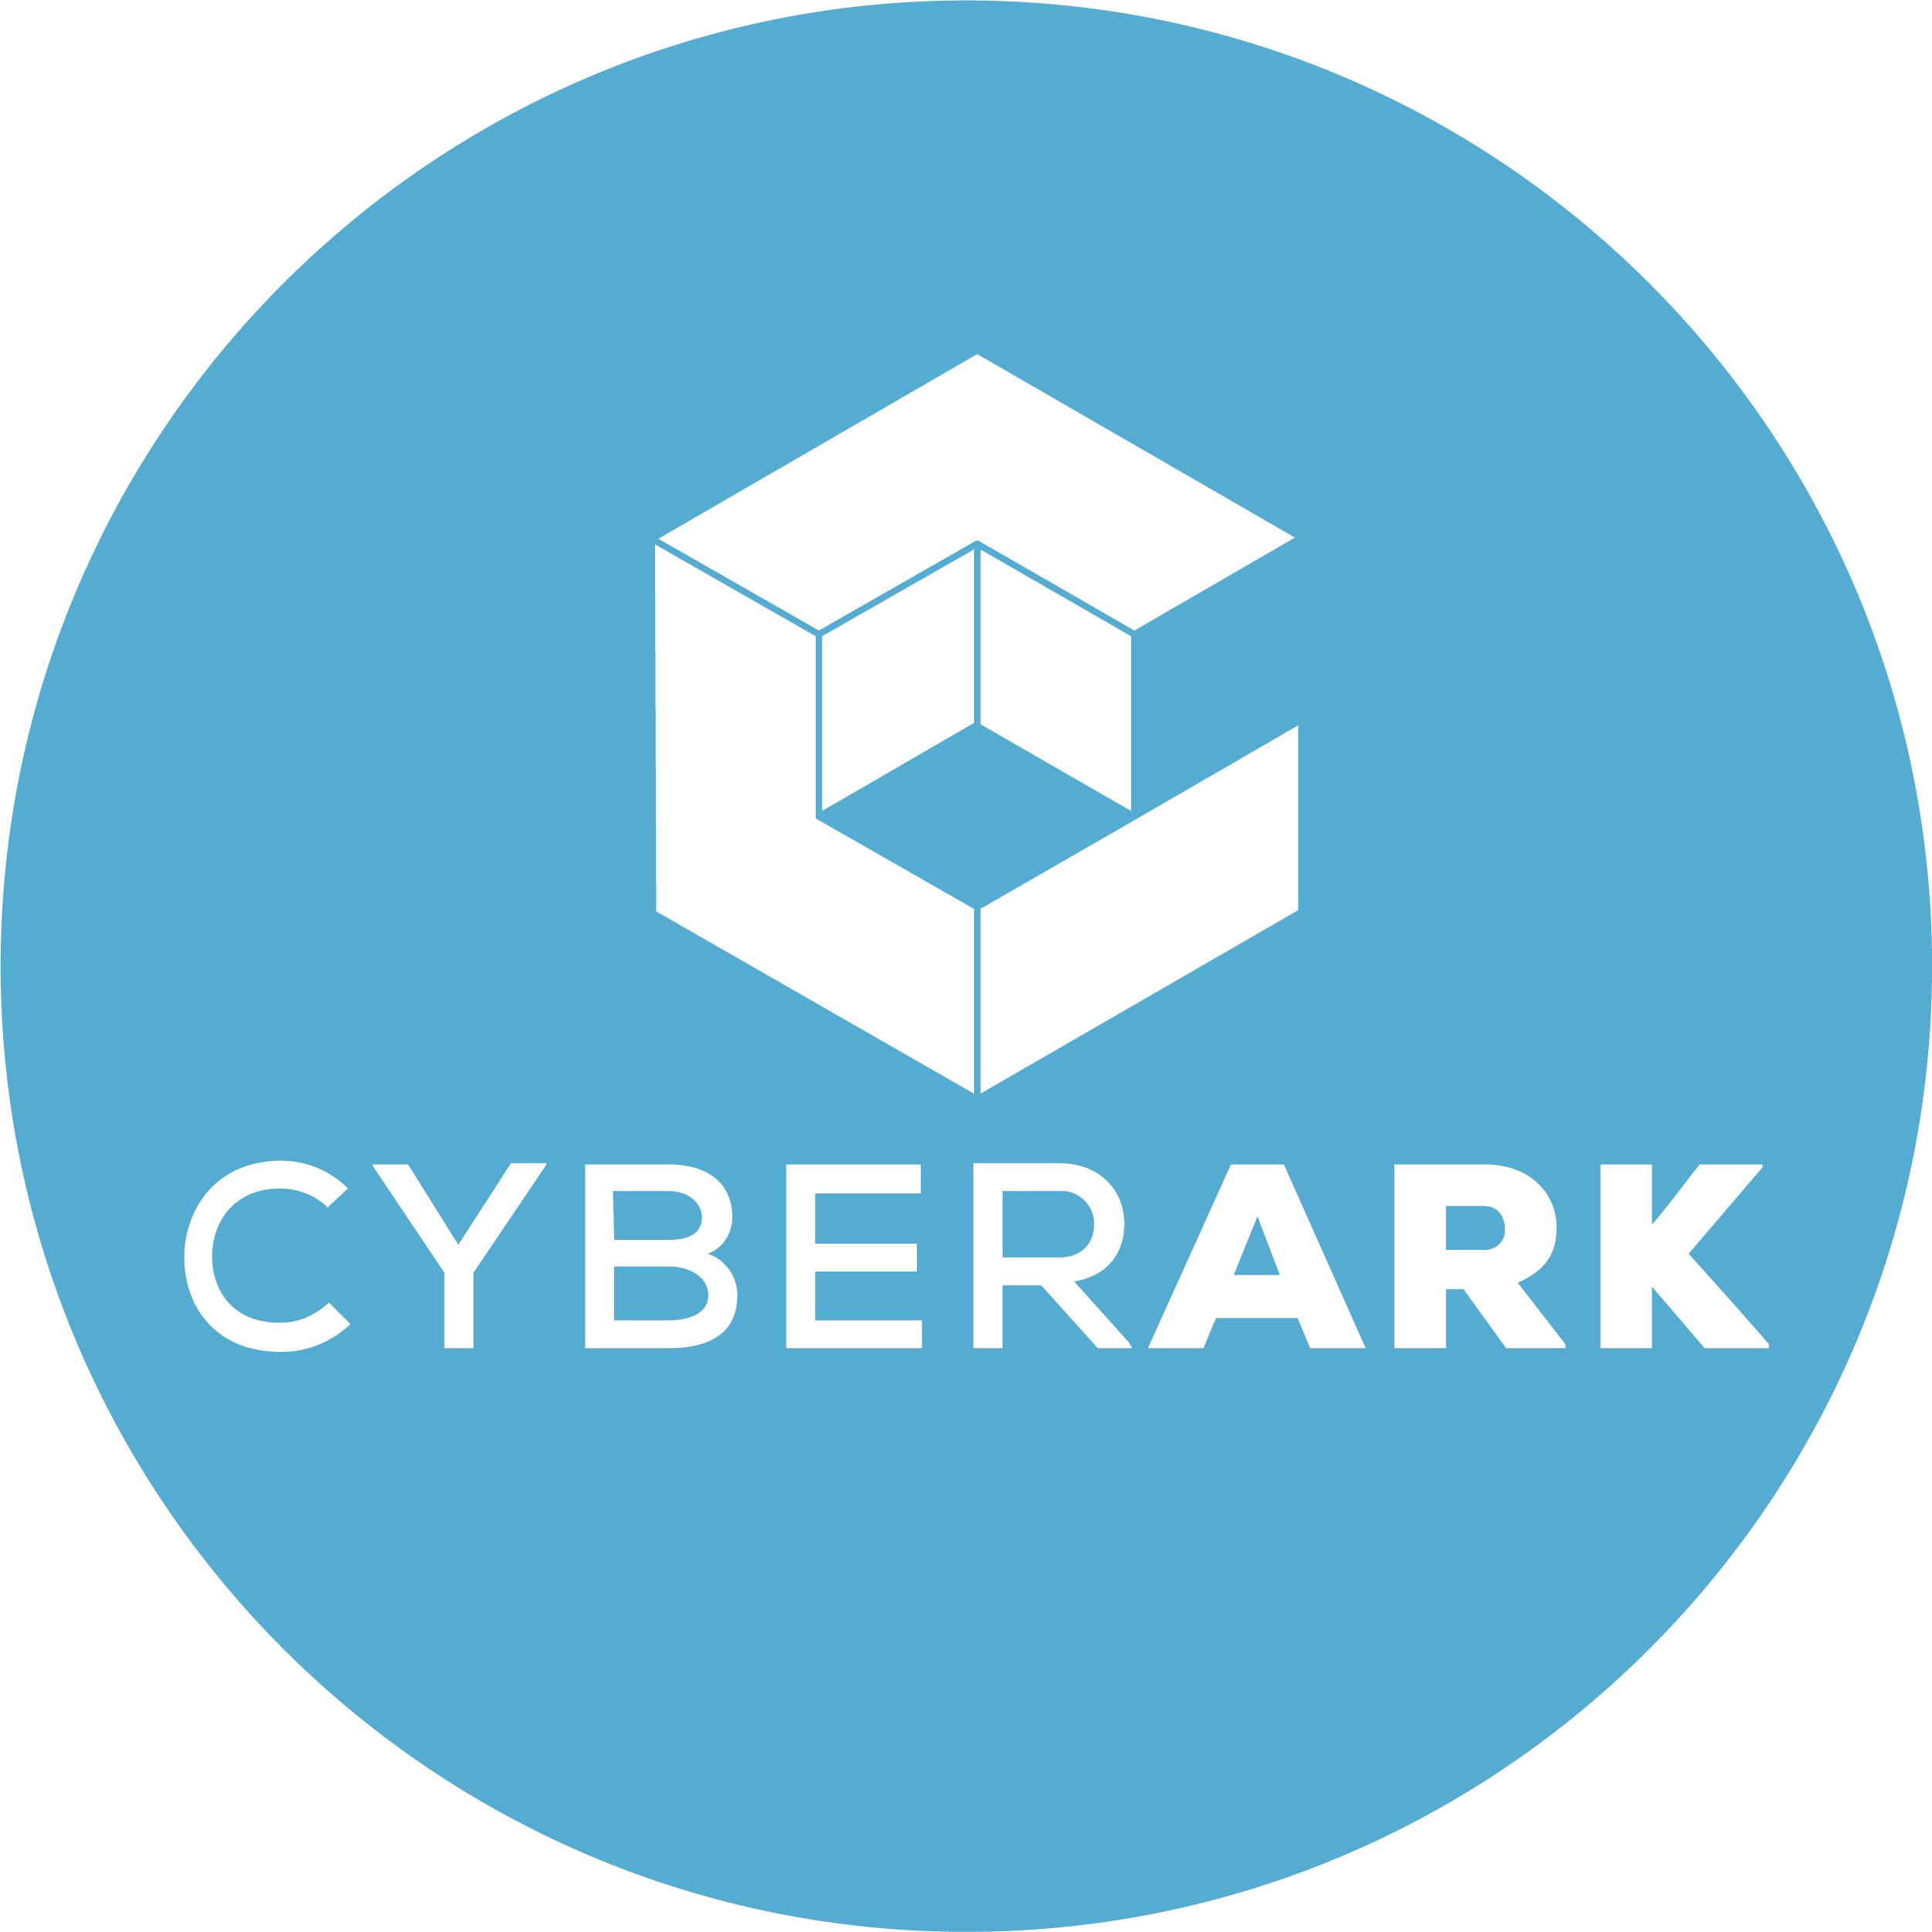 Cyberark. Cyber Ark. CYBERARK software. CYBERARK logo.